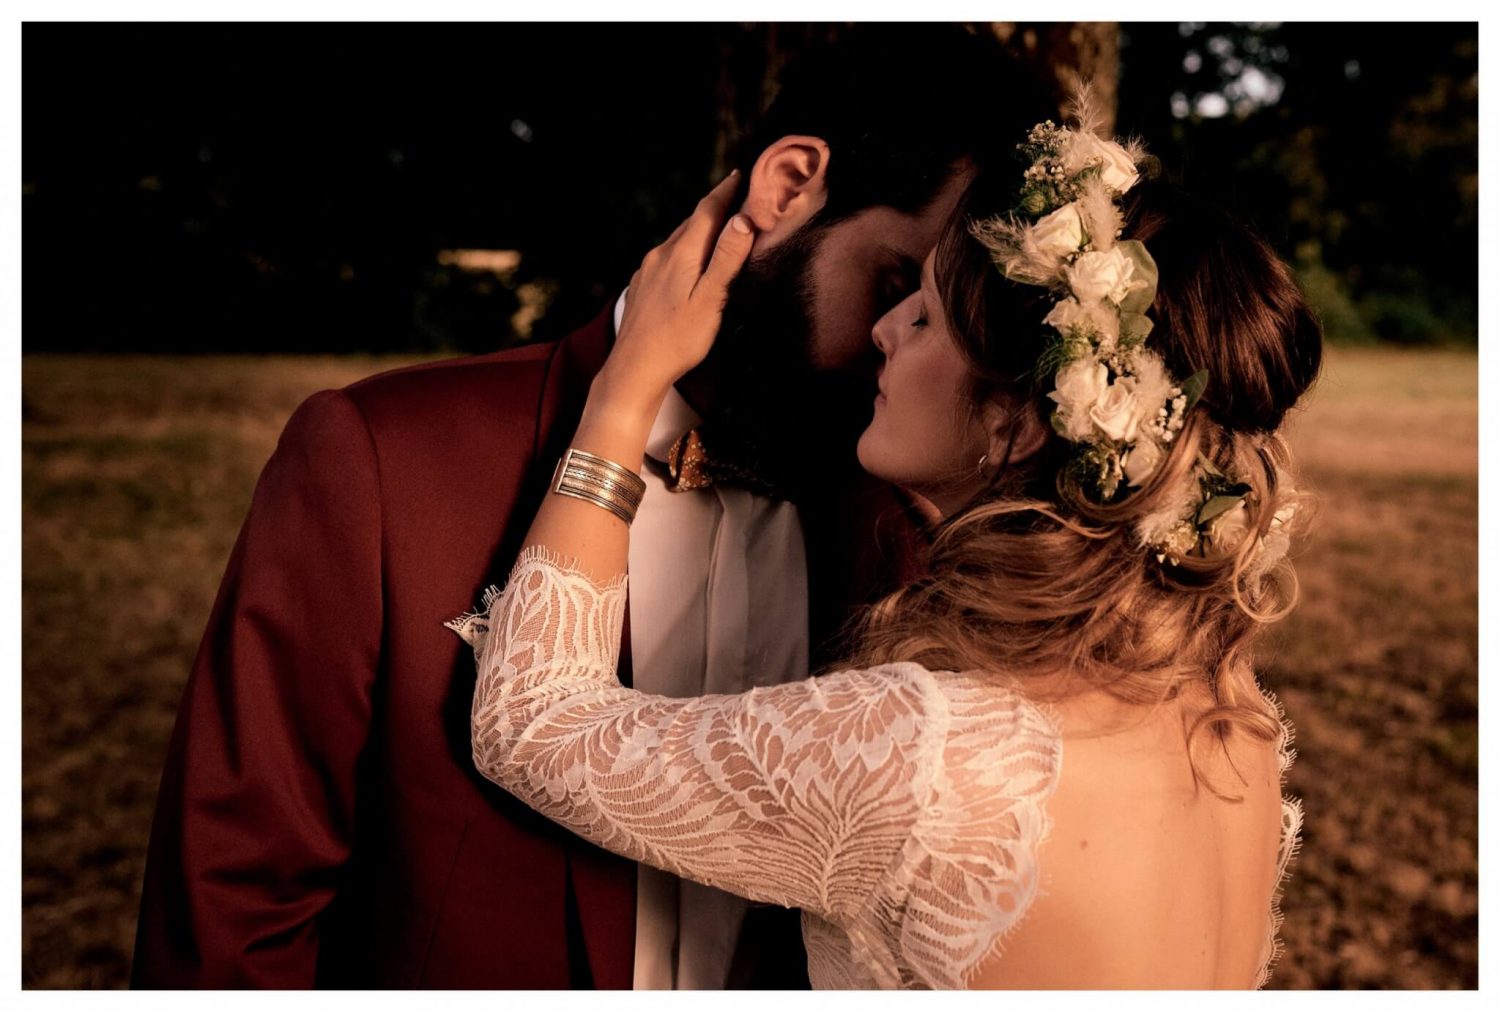 Séance couple de photographie de mariage à Paris| Photographe Mariage Paris | P-Y. QUEIGNEC